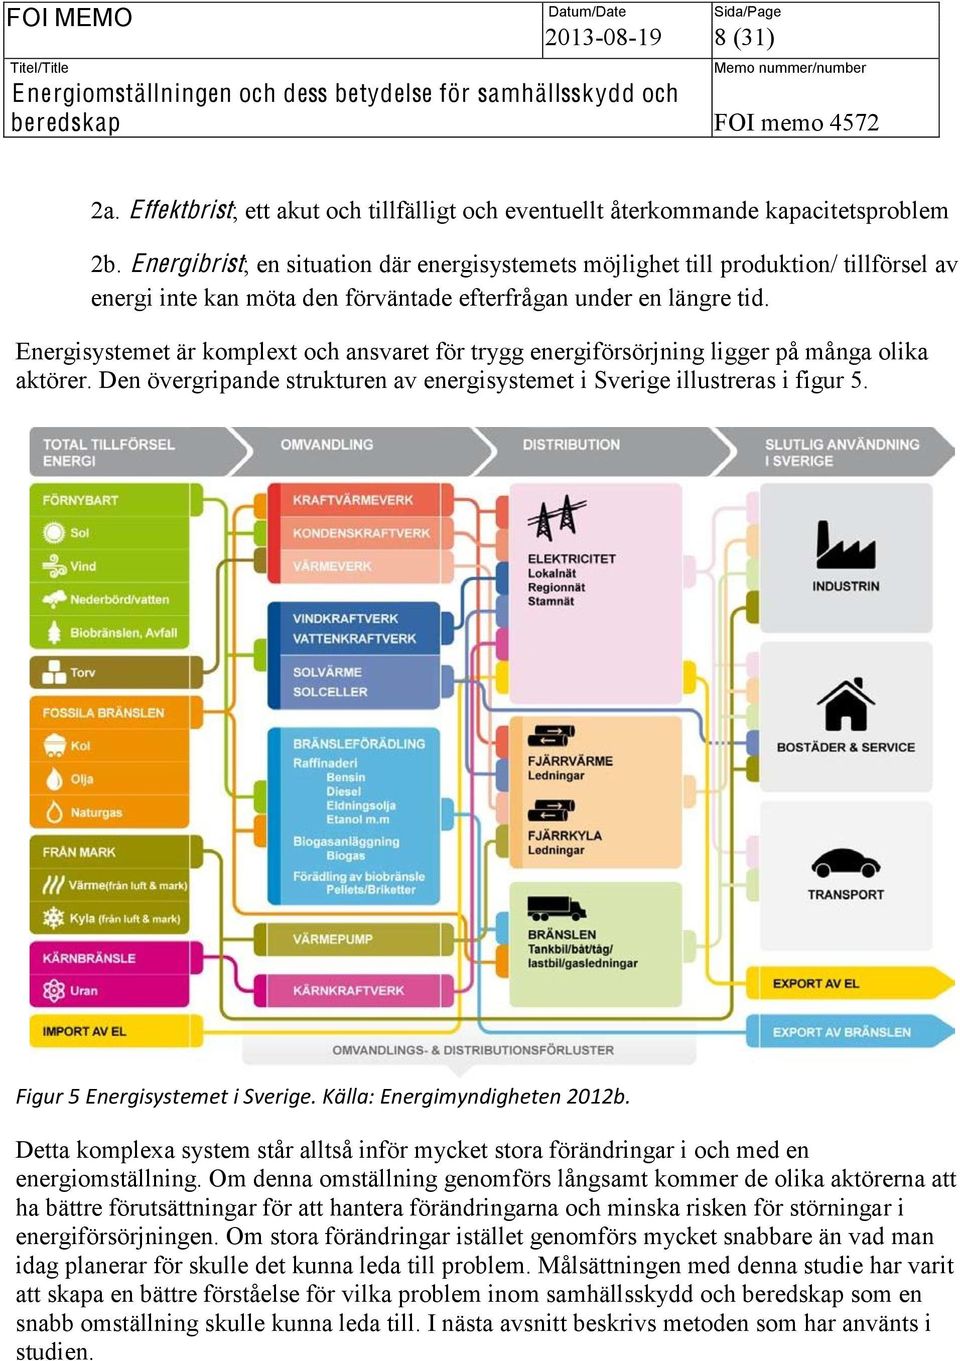 Energisystemet är komplext och ansvaret för trygg energiförsörjning ligger på många olika aktörer. Den övergripande strukturen av energisystemet i Sverige illustreras i figur 5.